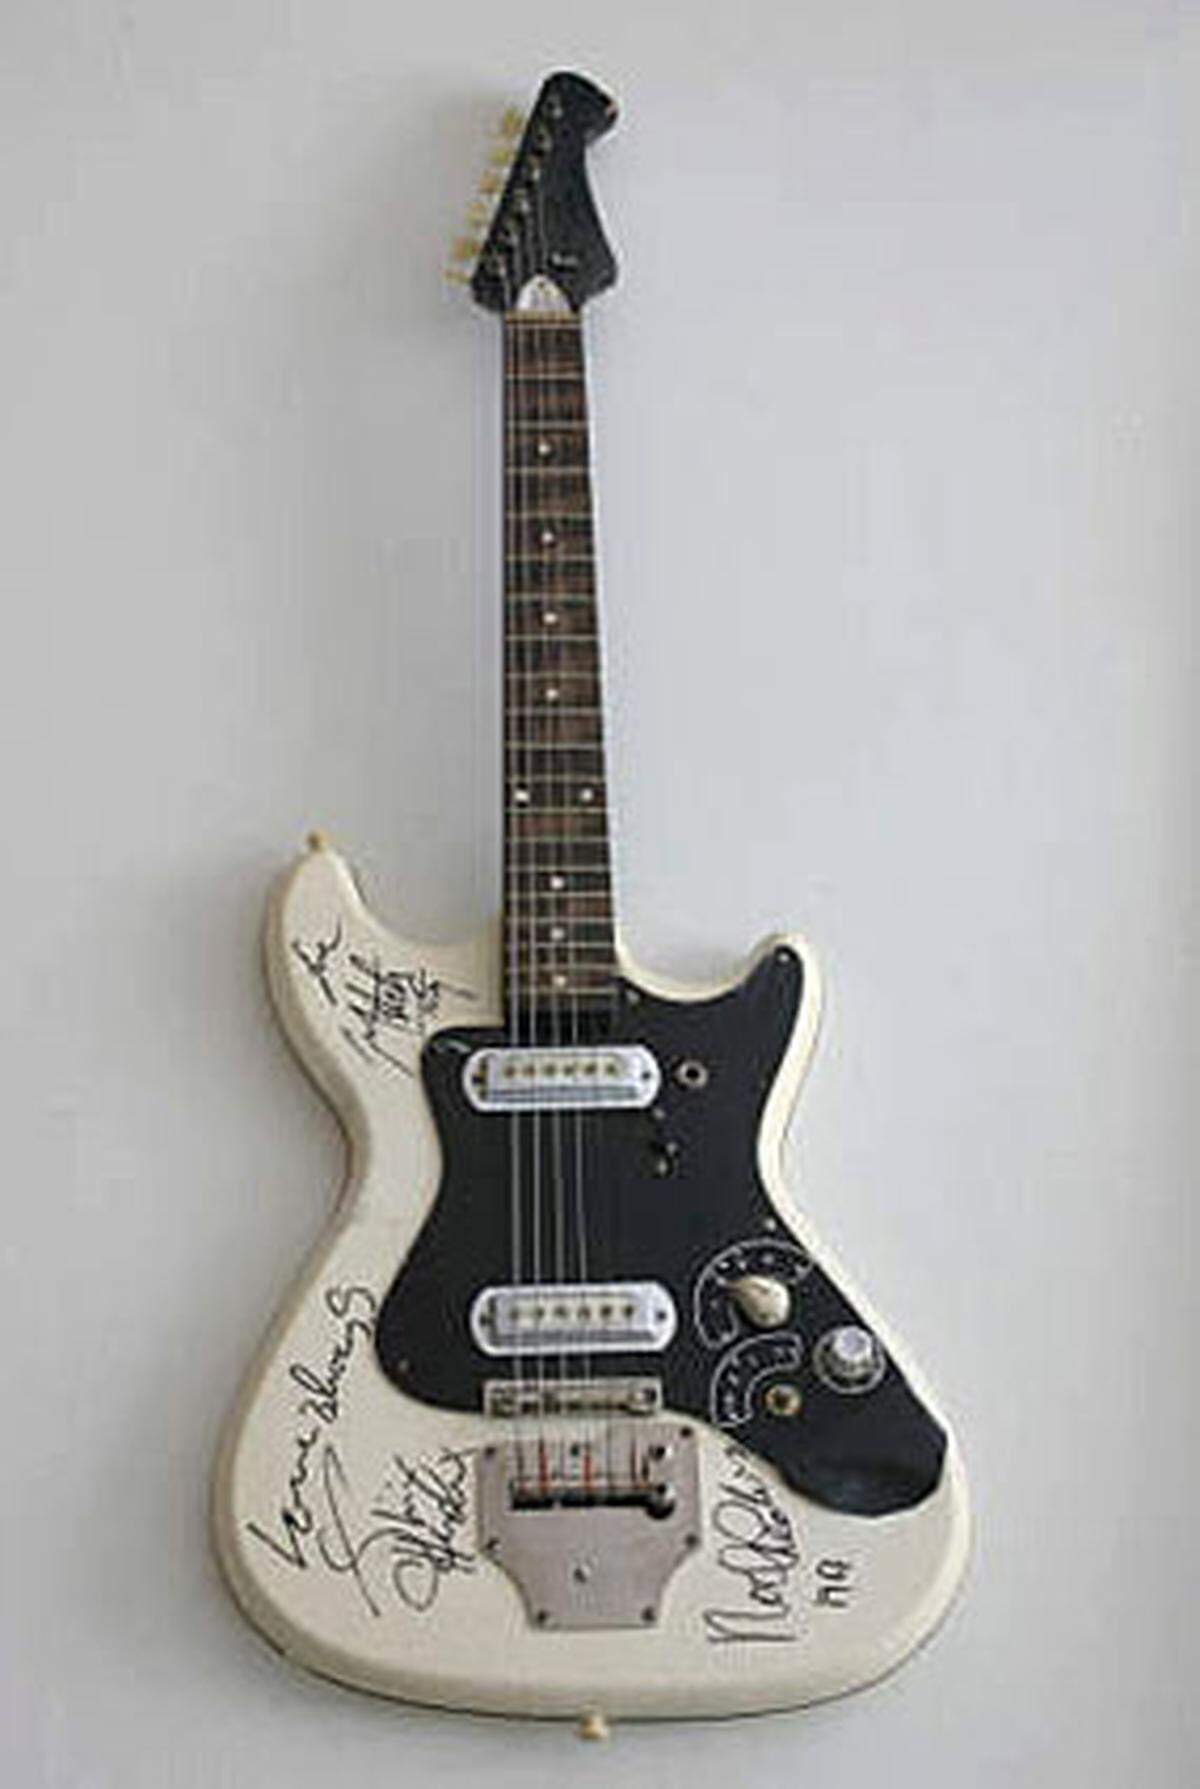 Ein Highlight ist eine handsignierte Gitarre von Jimi Hendrix aus 1967.  Im Bild: Handsignierte Gitarre von Jimi Hendrix, 1967